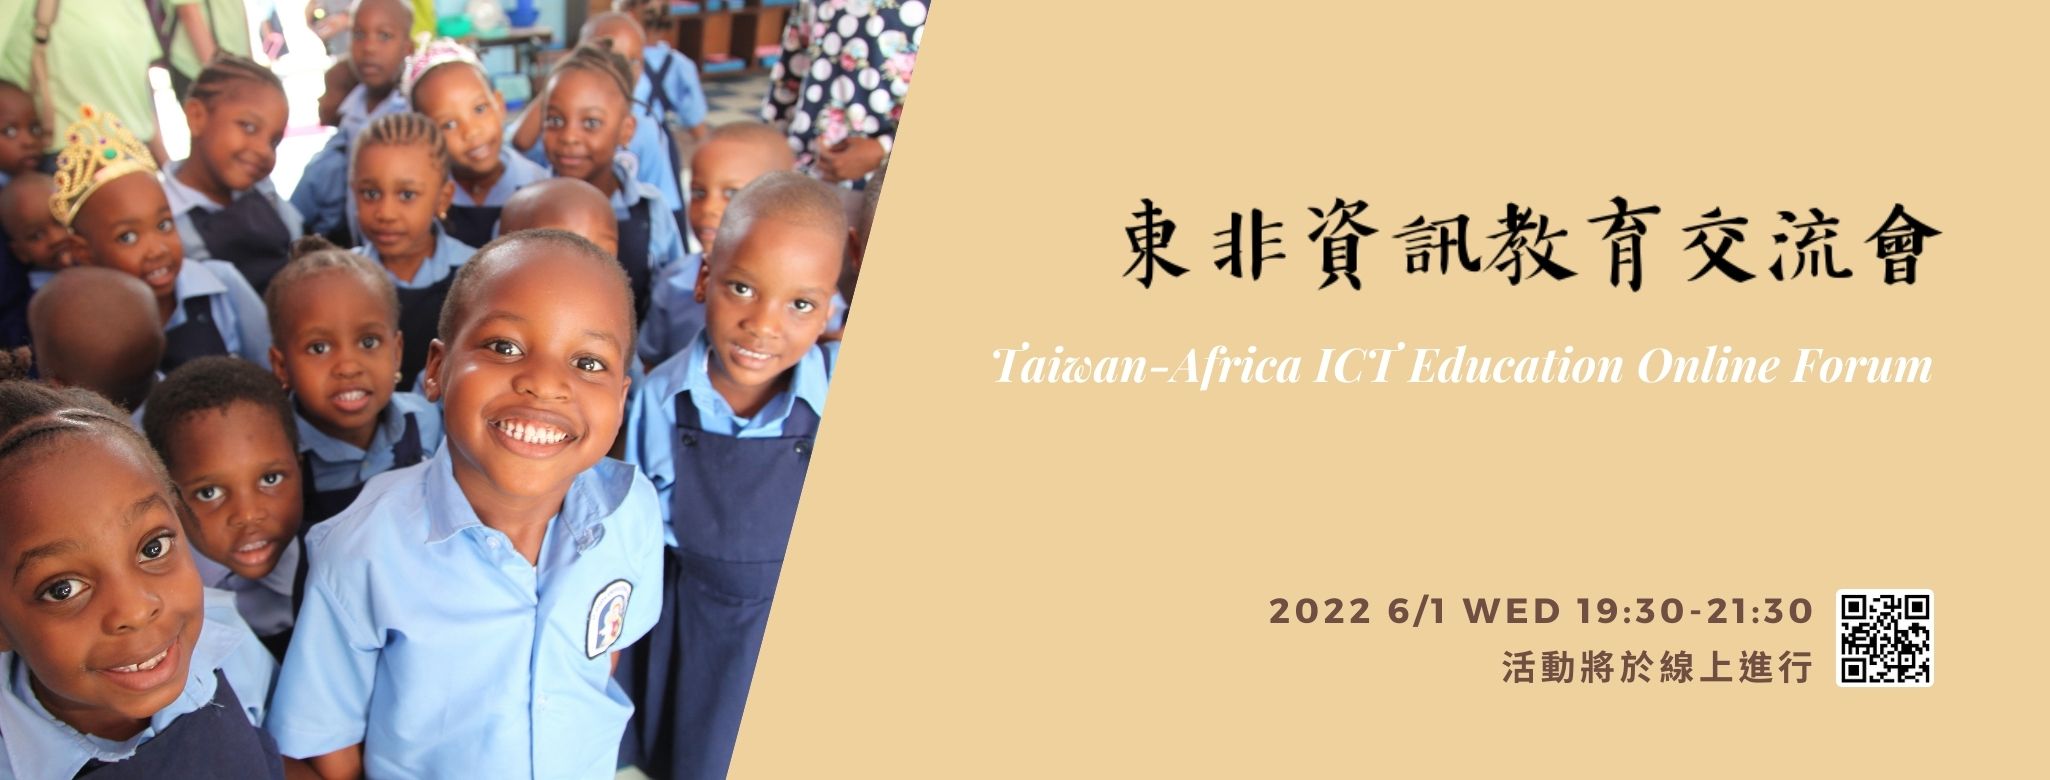 2022國立清華大學 東非資訊教育線上交流會 NTHU 2022 Taiwan-Africa ICT Education Online Forum